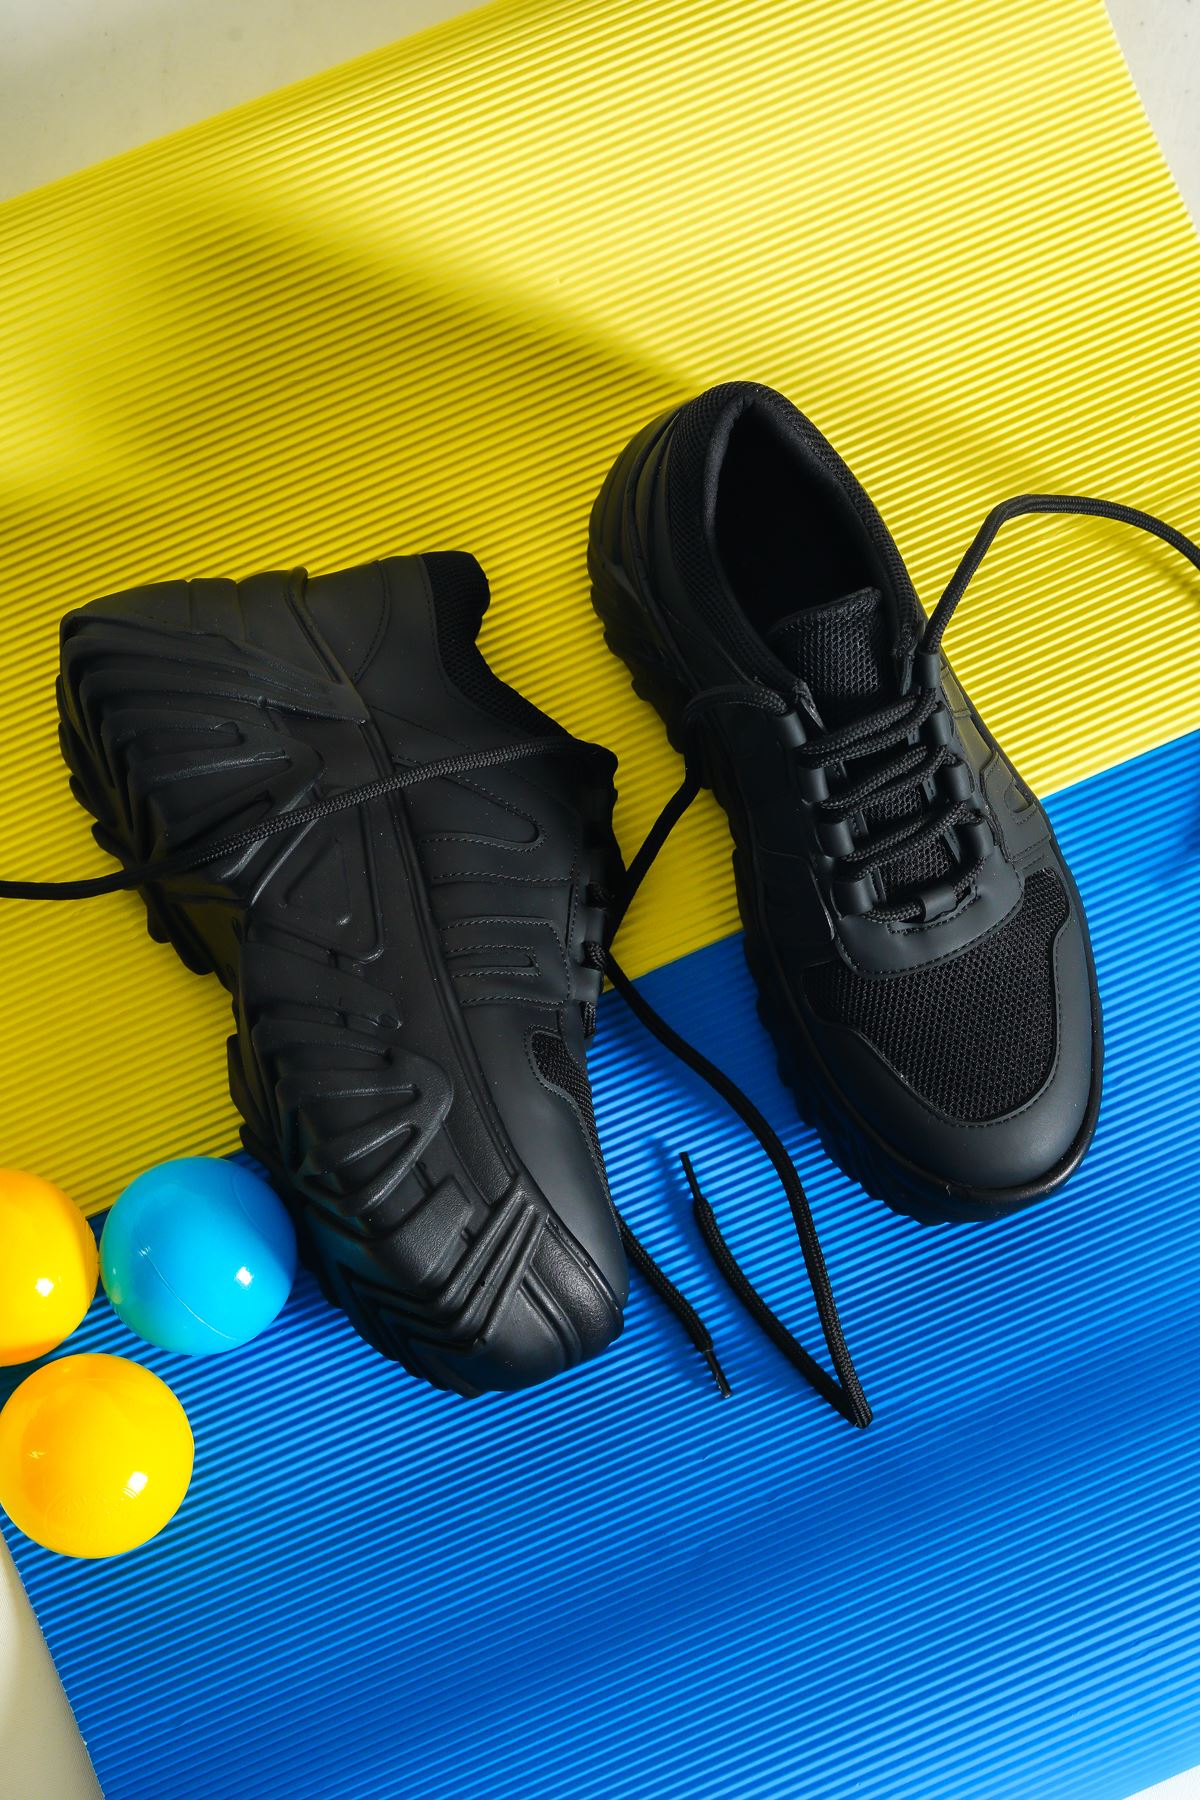 Kadın Vudik Kalın Tabanlı Spor Ayakkabı - Siyah